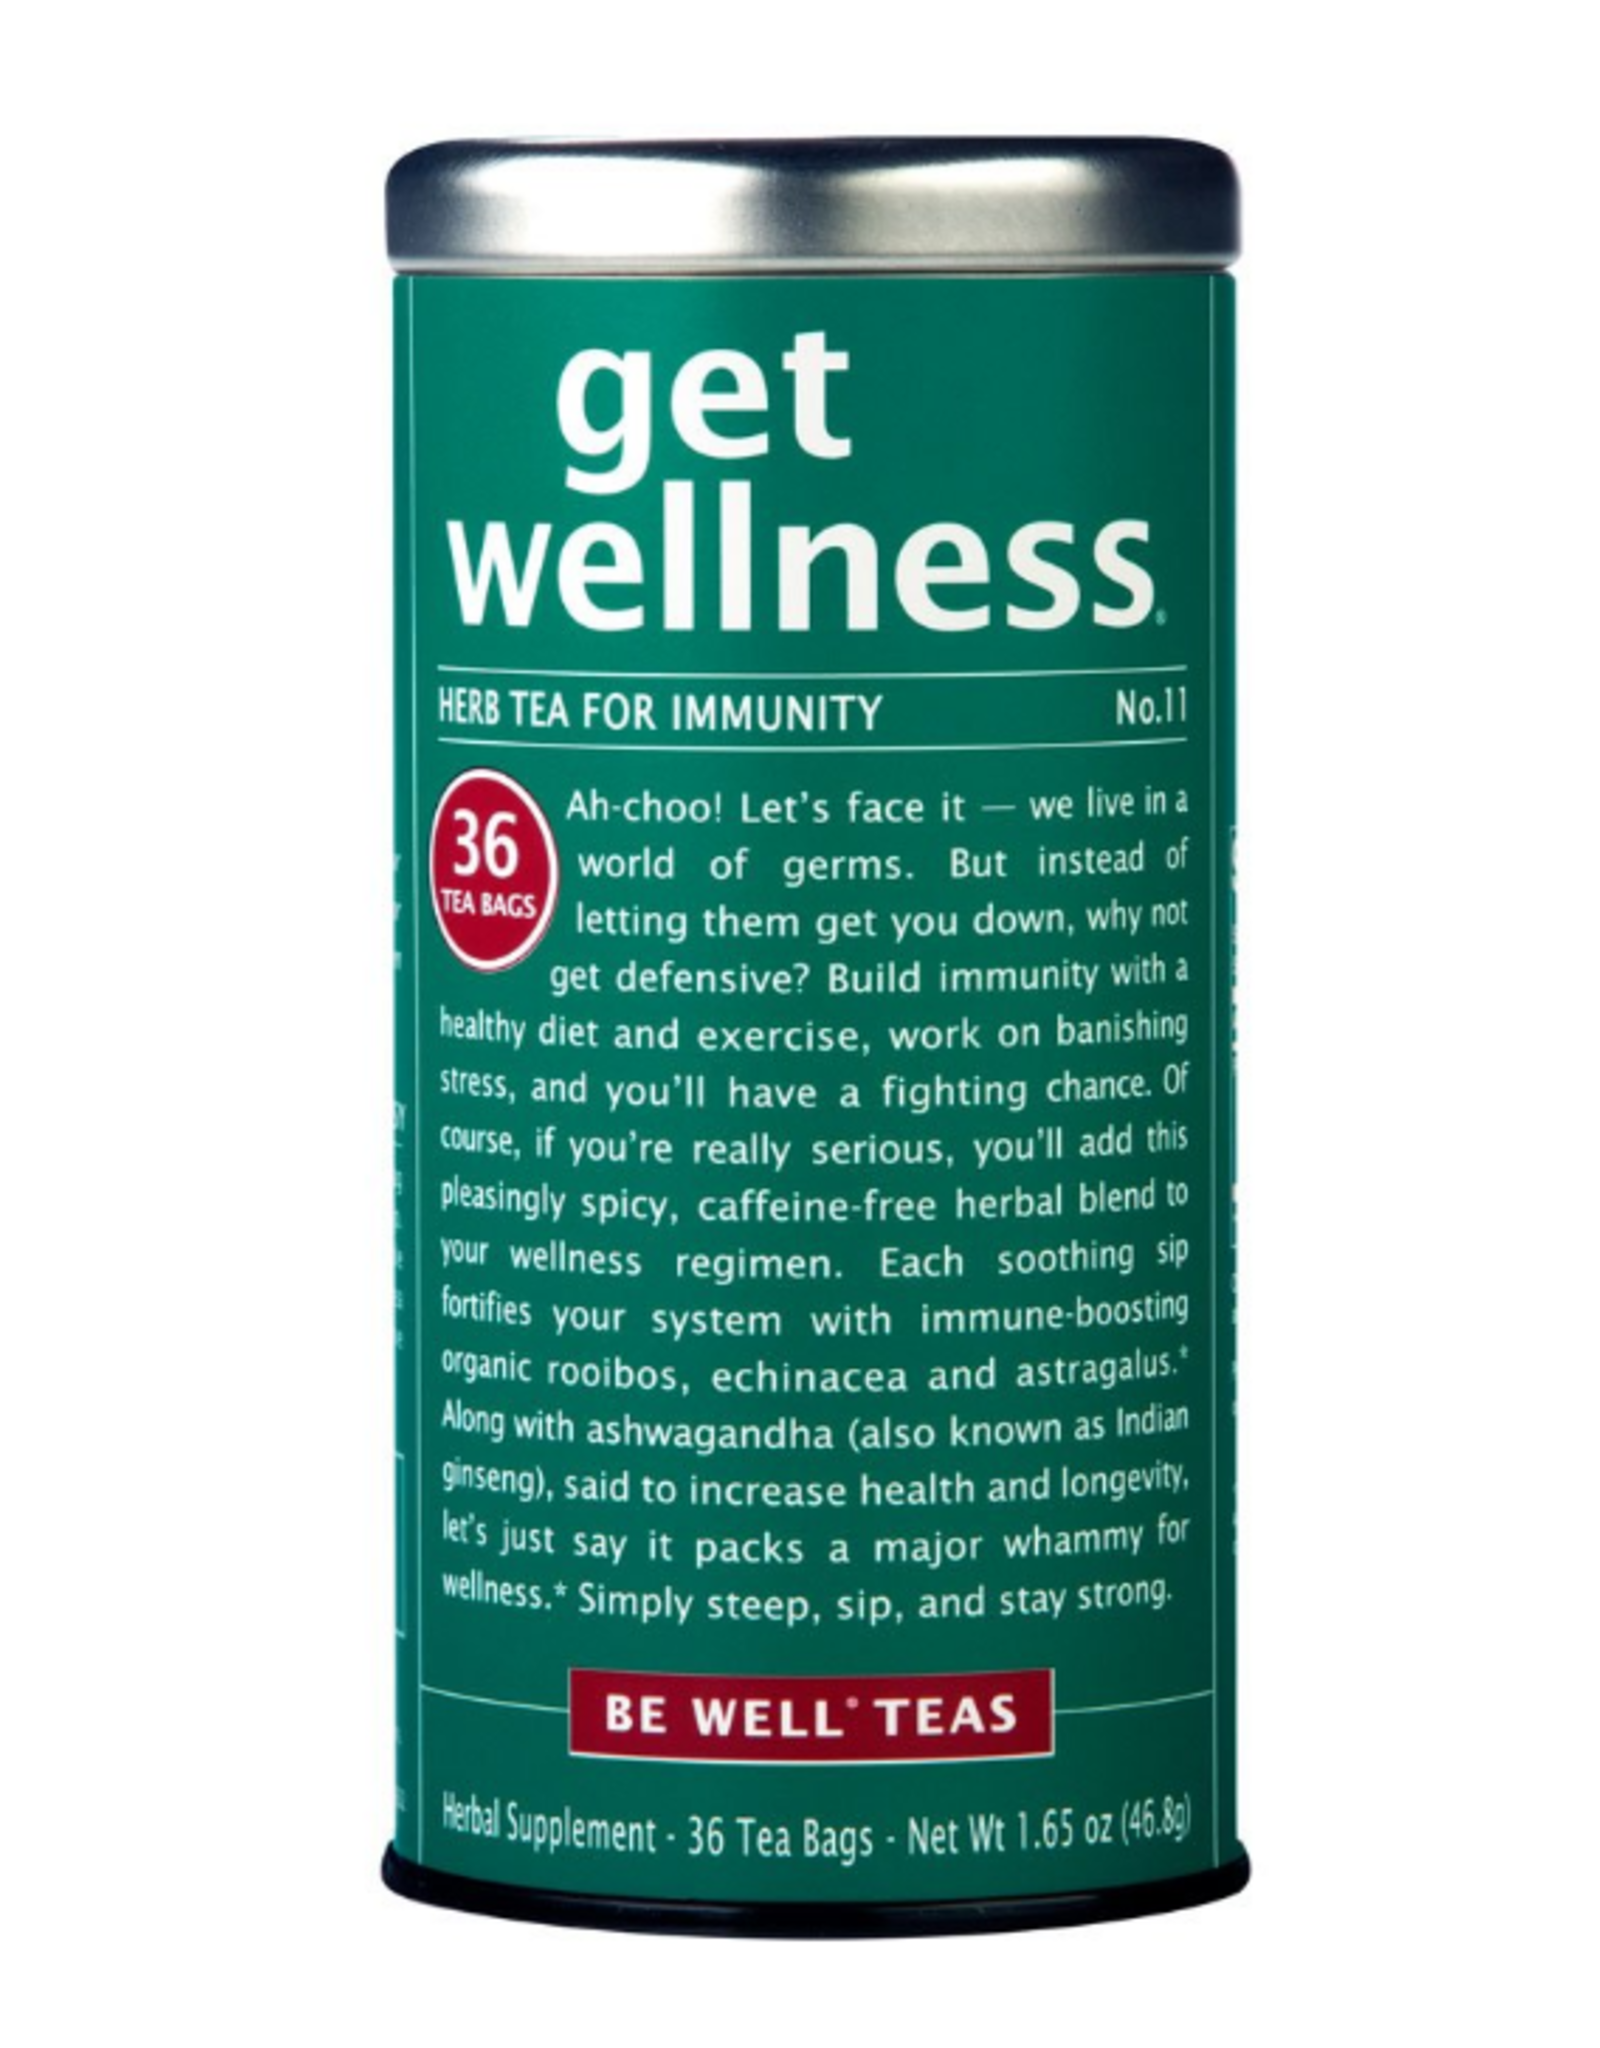 The Republic of Tea Get Wellness No. 11 Immunity Tea, 36 Bag Tin